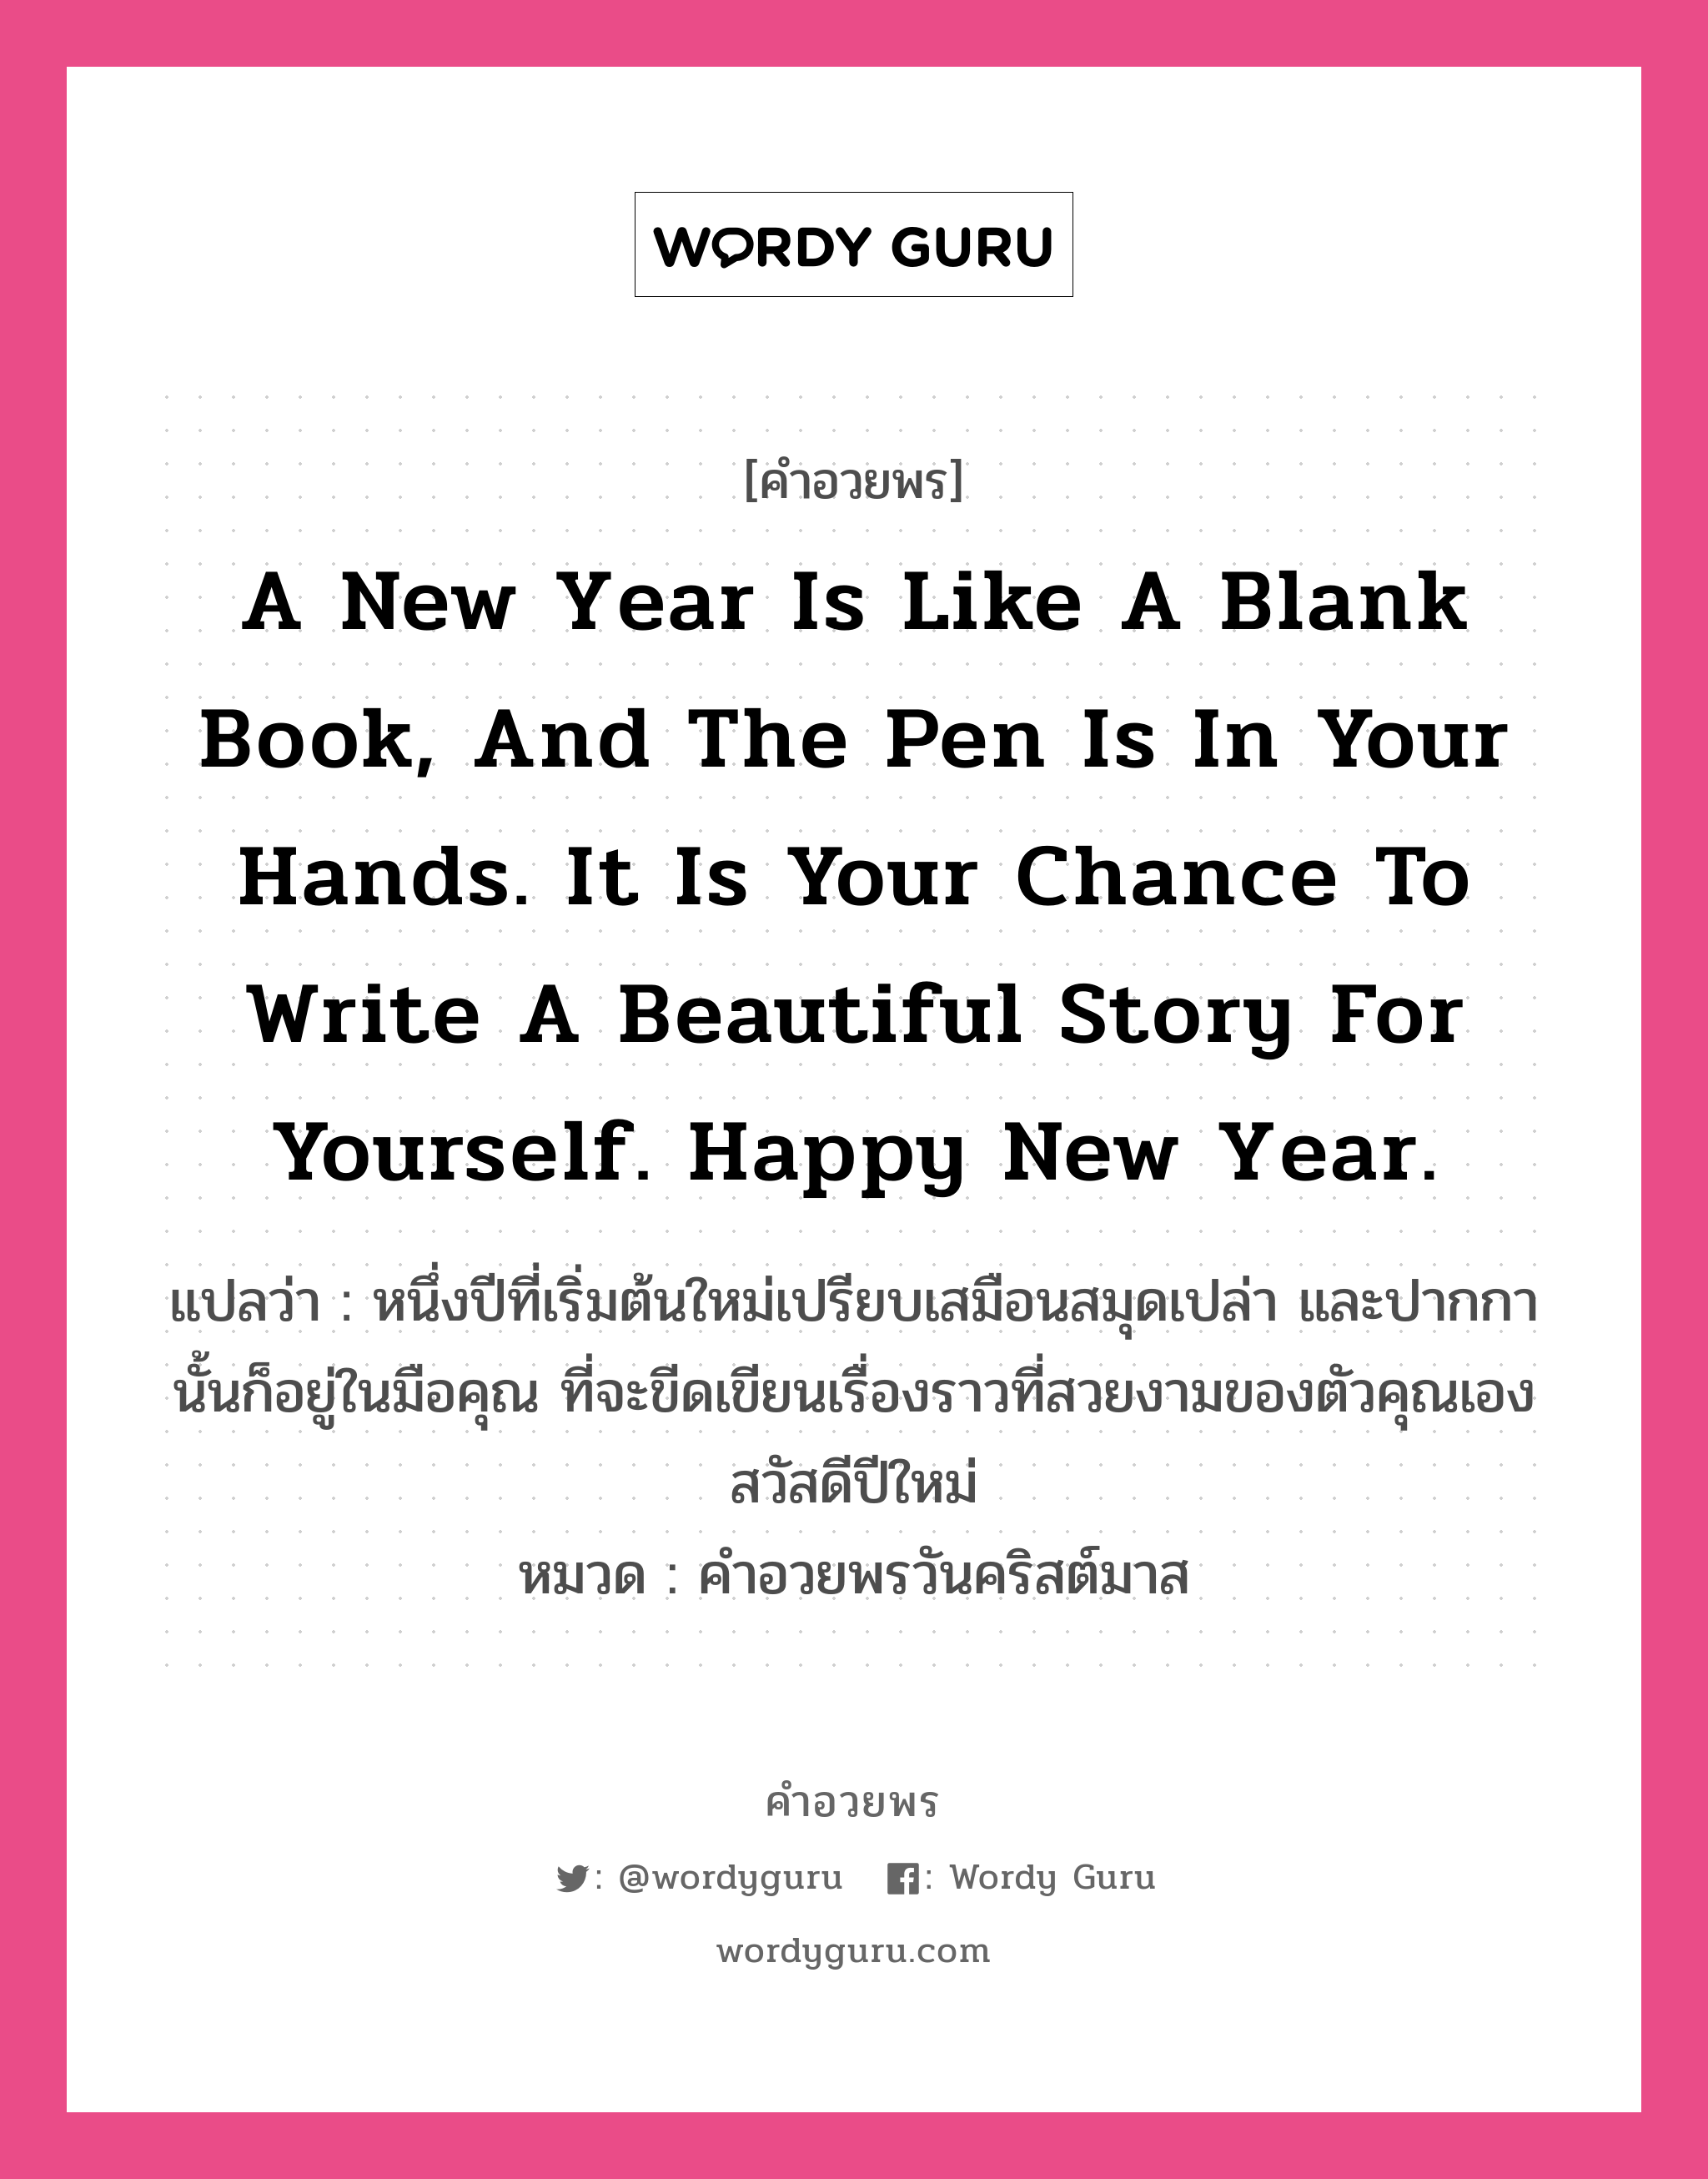 คำอวยพร A new year is like a blank book, and the pen is in your hands. It is your chance to write a beautiful story for yourself. Happy New Year. คืออะไร?, แปลว่า หนึ่งปีที่เริ่มต้นใหม่เปรียบเสมือนสมุดเปล่า และปากกานั้นก็อยู่ในมือคุณ ที่จะขีดเขียนเรื่องราวที่สวยงามของตัวคุณเอง สวัสดีปีใหม่ หมวด คำอวยพรวันคริสต์มาส หมวด คำอวยพรวันคริสต์มาส